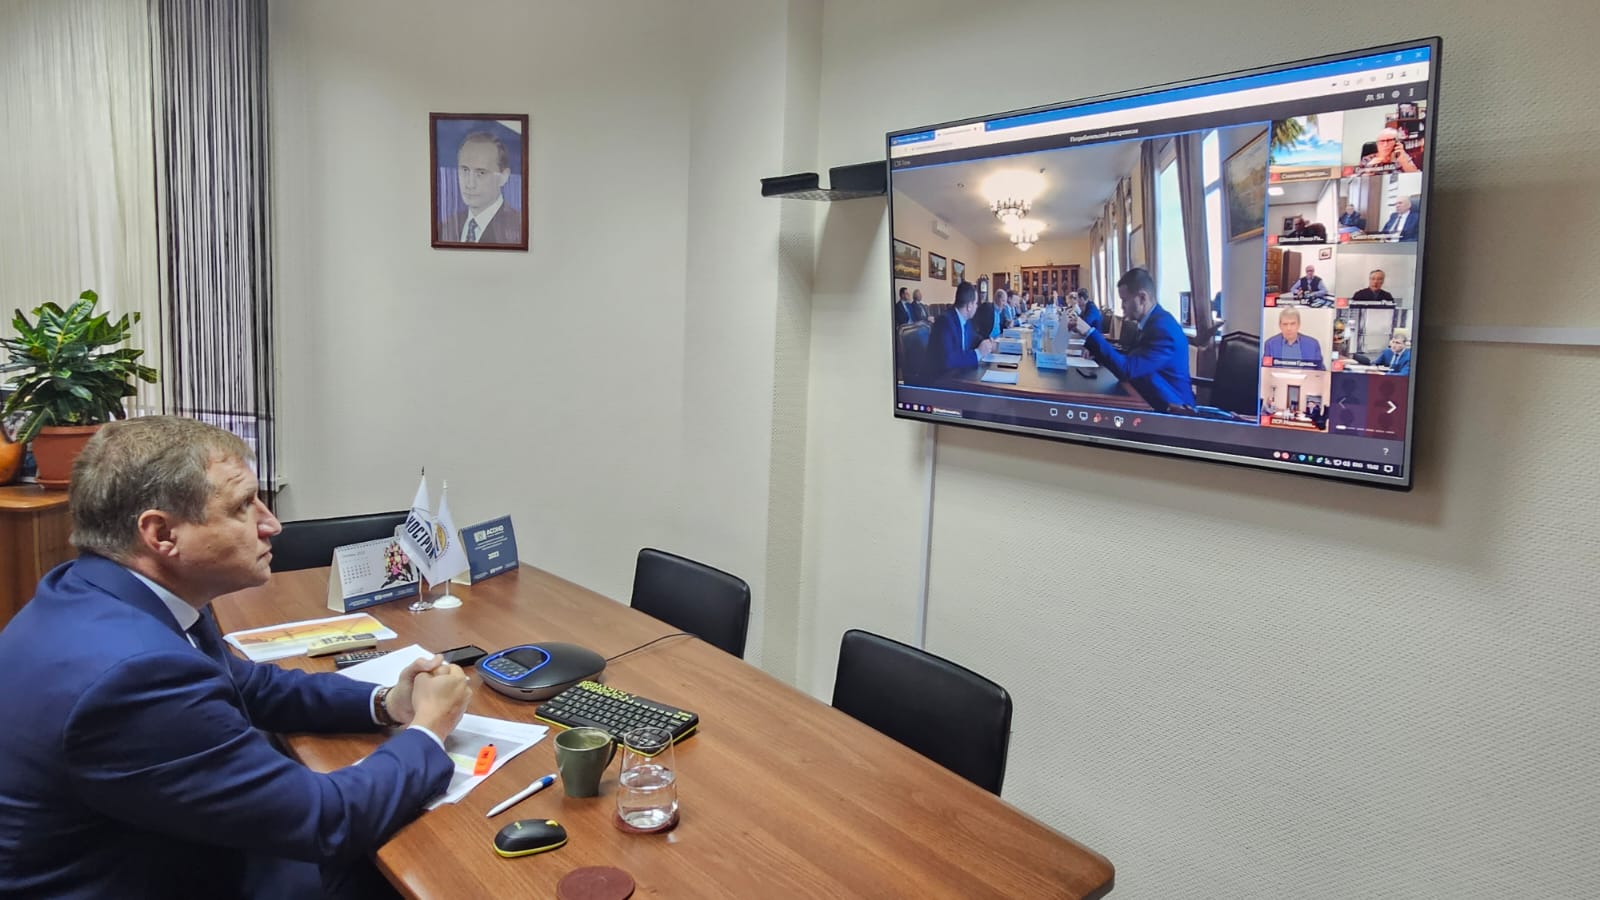 М. Федорченко выступил на заседании Правления РСС по вопросам устранения условий для проявления «потребительского экстремизма» при долевом строительстве